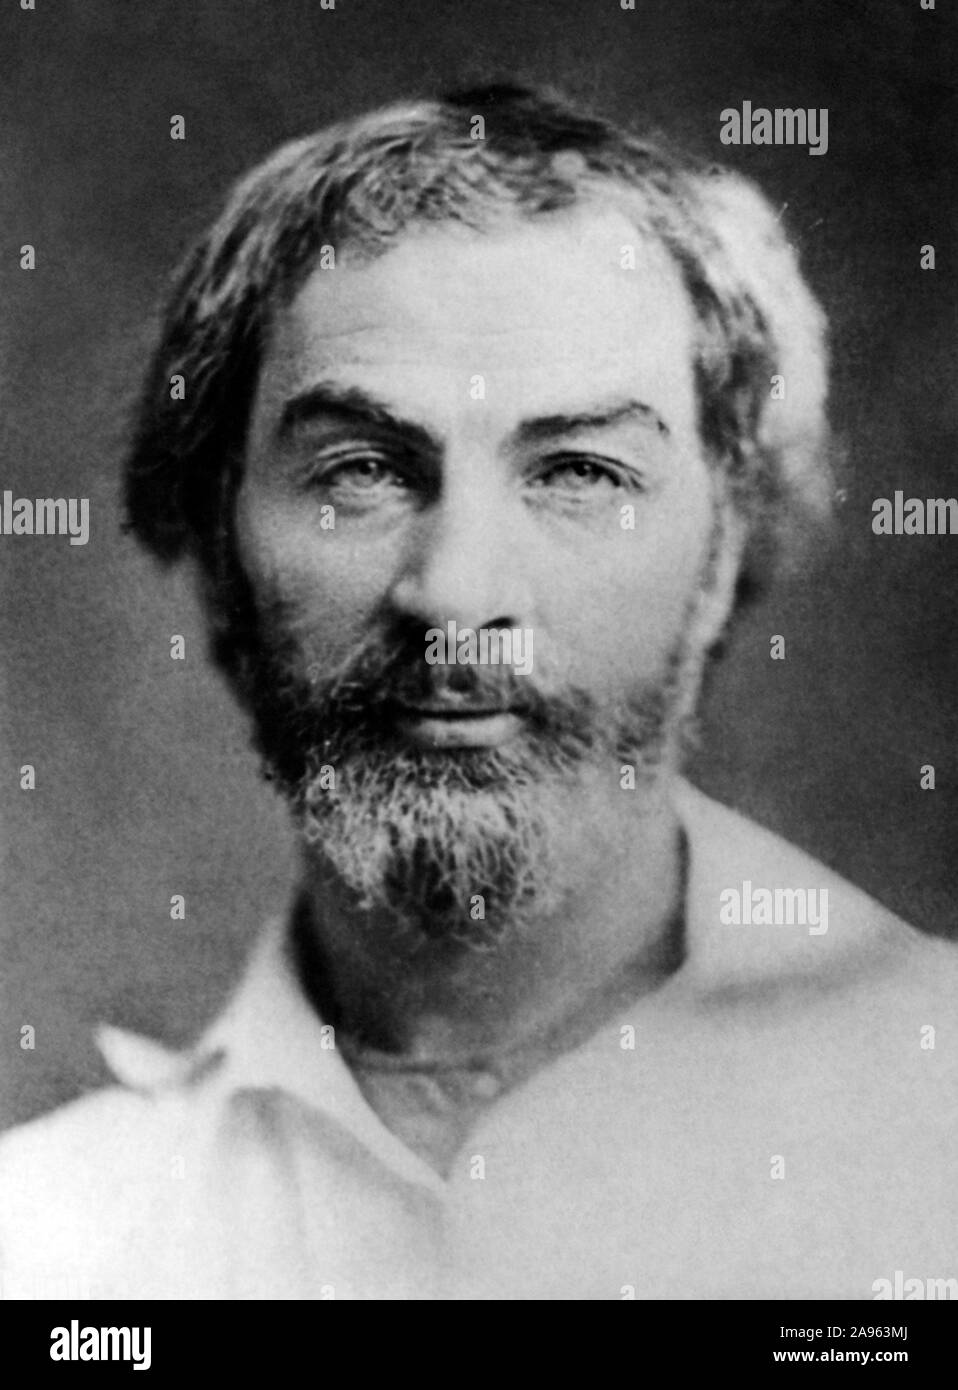 Vintage foto ritratto del poeta americano, saggista e giornalista Walt Whitman (1819 - 1892). Foto di circa 1854. Foto Stock